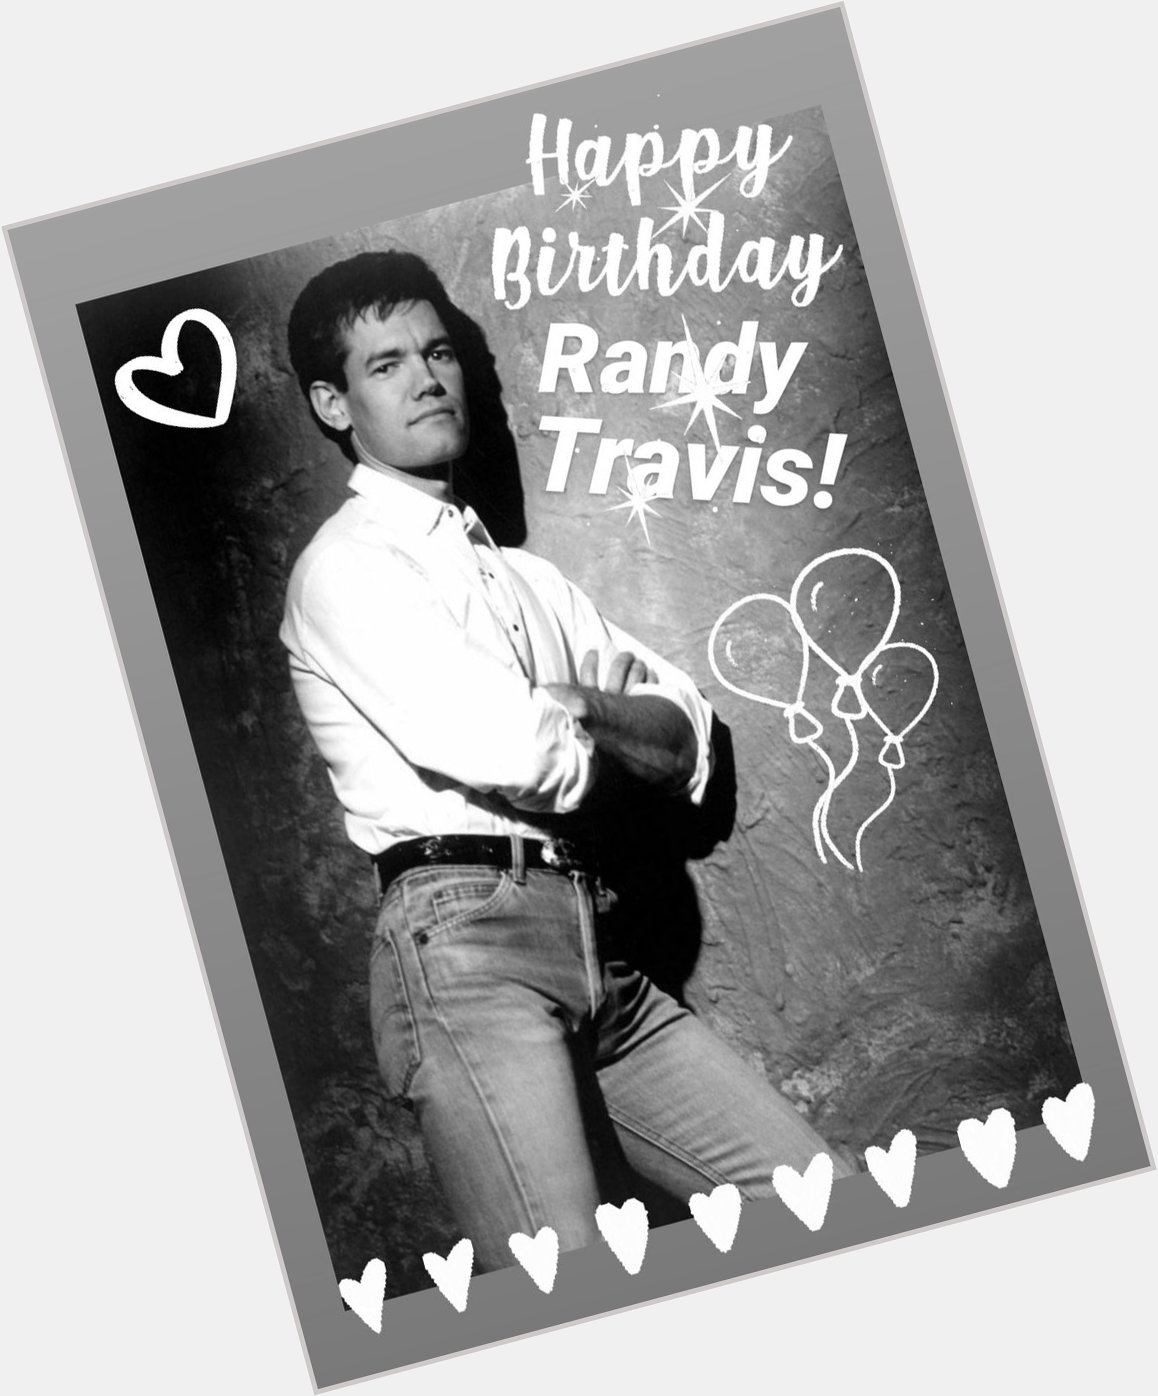 Happy Birthday to Randy Travis!       